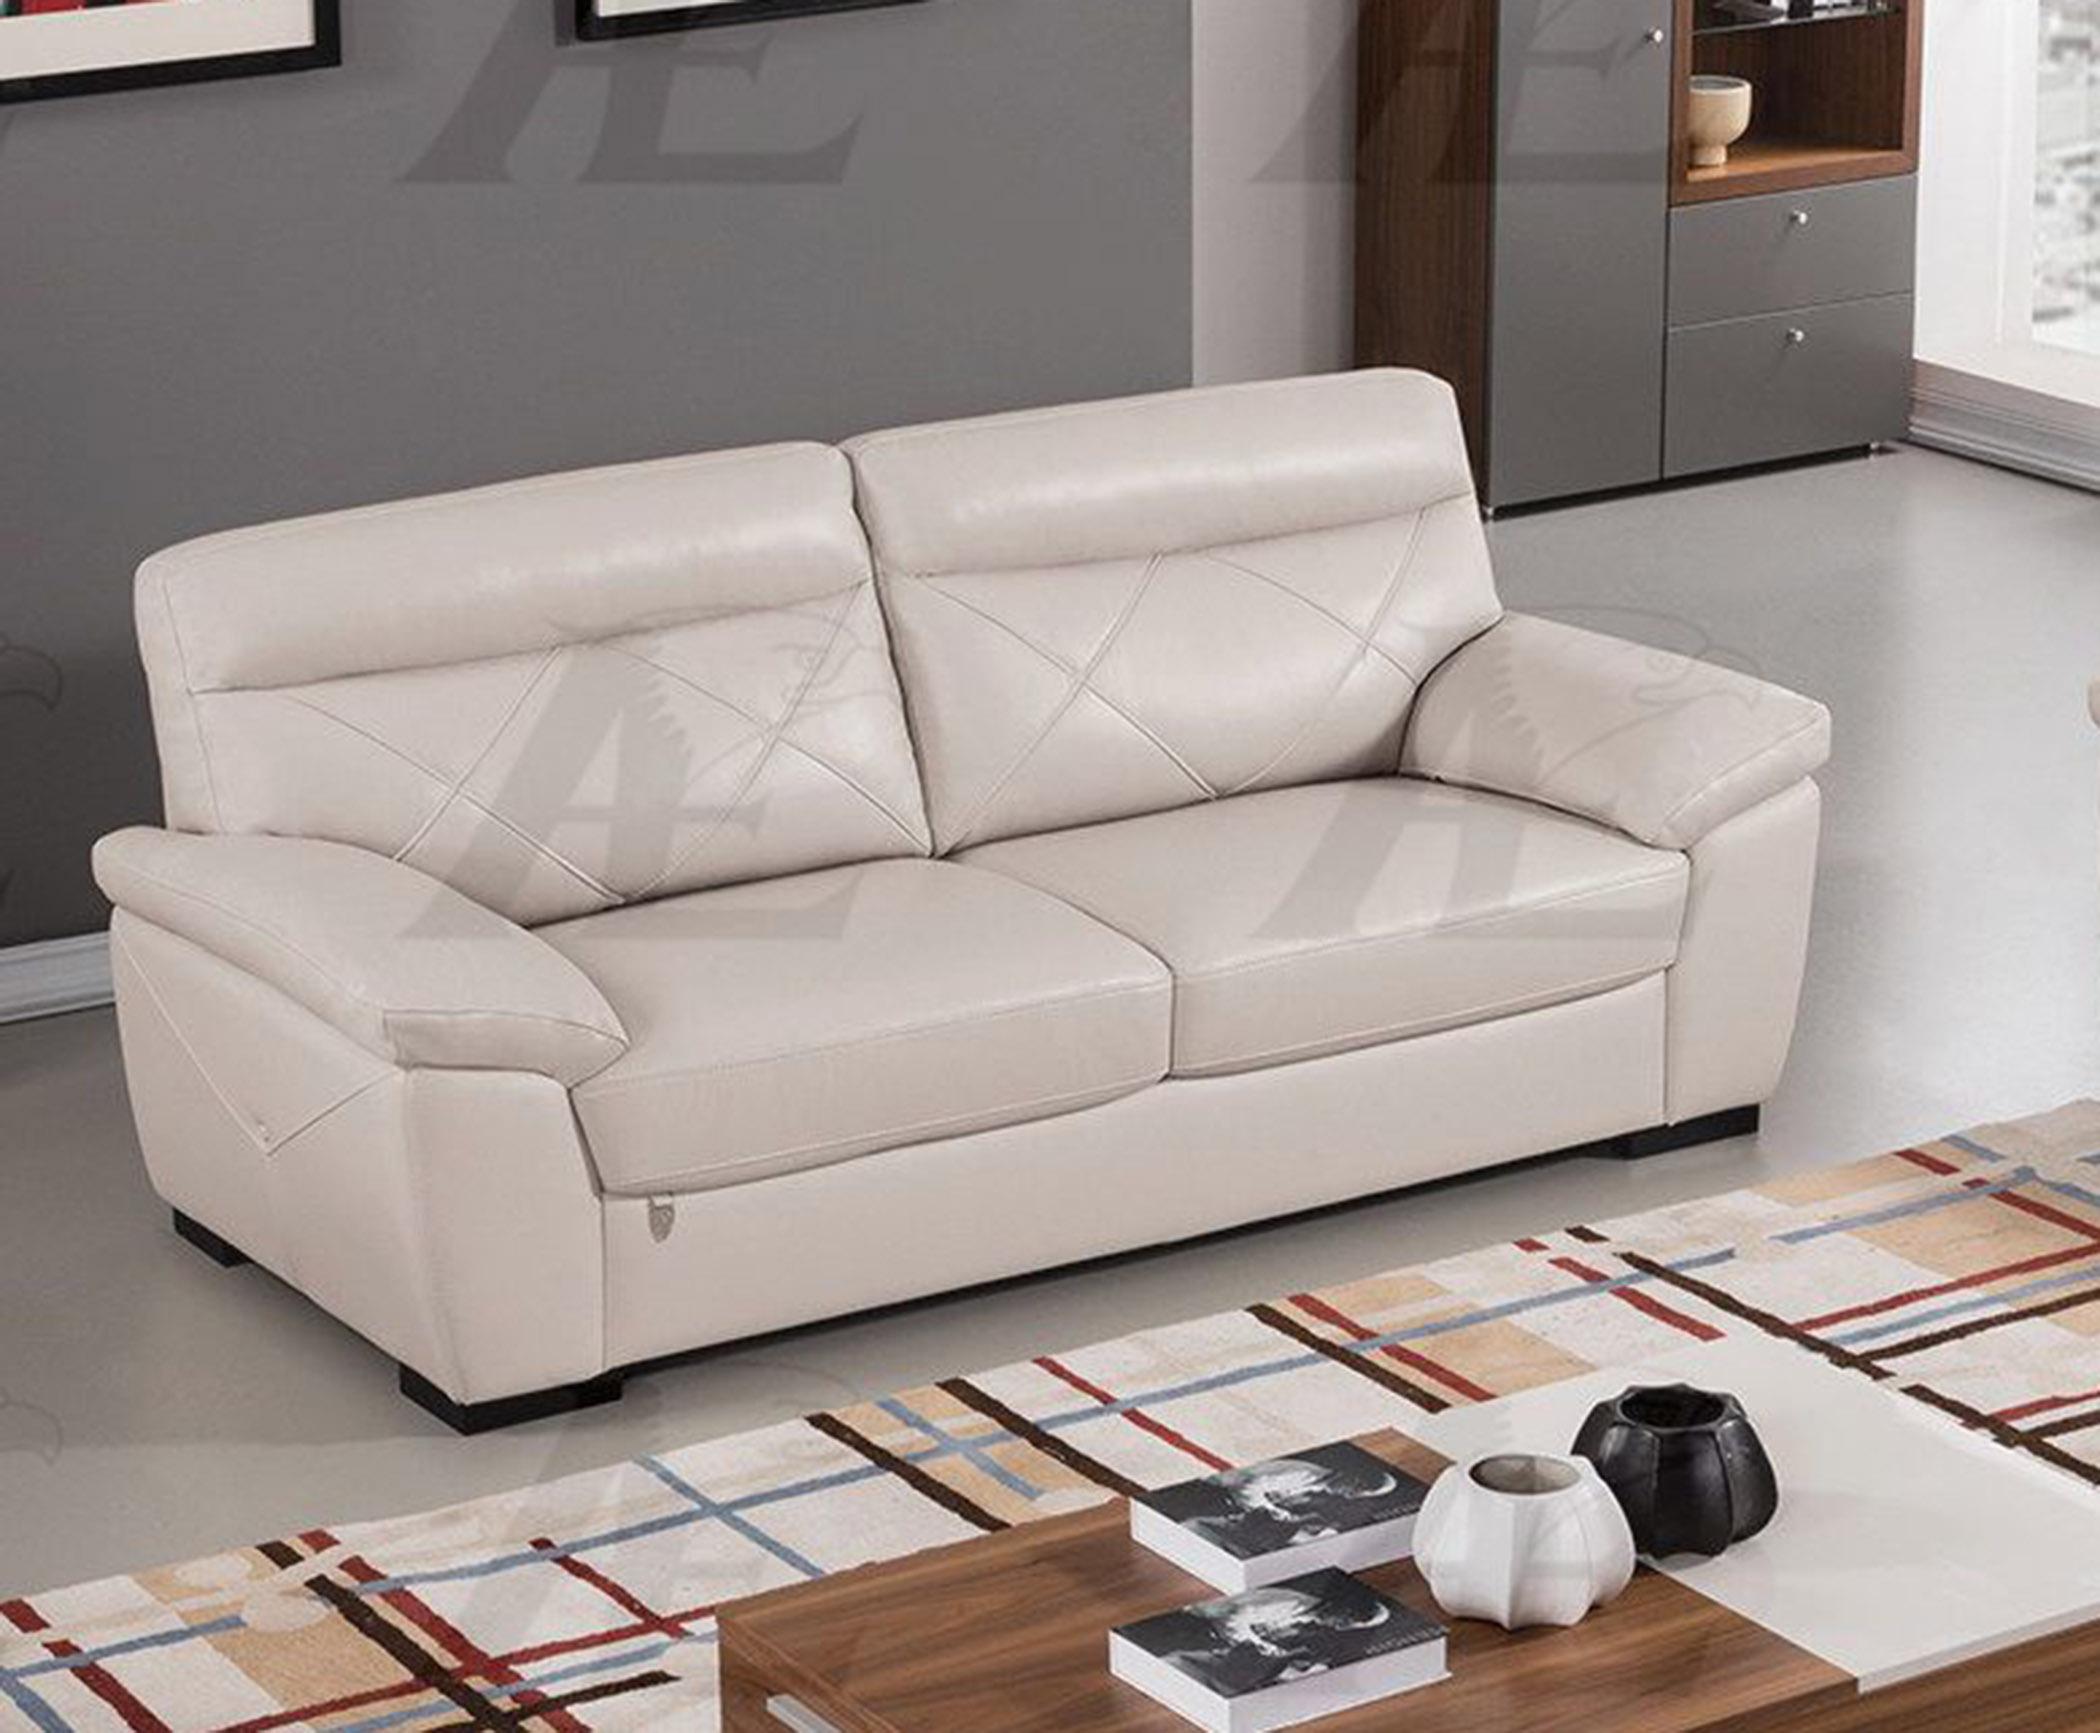 

    
EK081-LG-SF American Eagle Furniture Sofa
